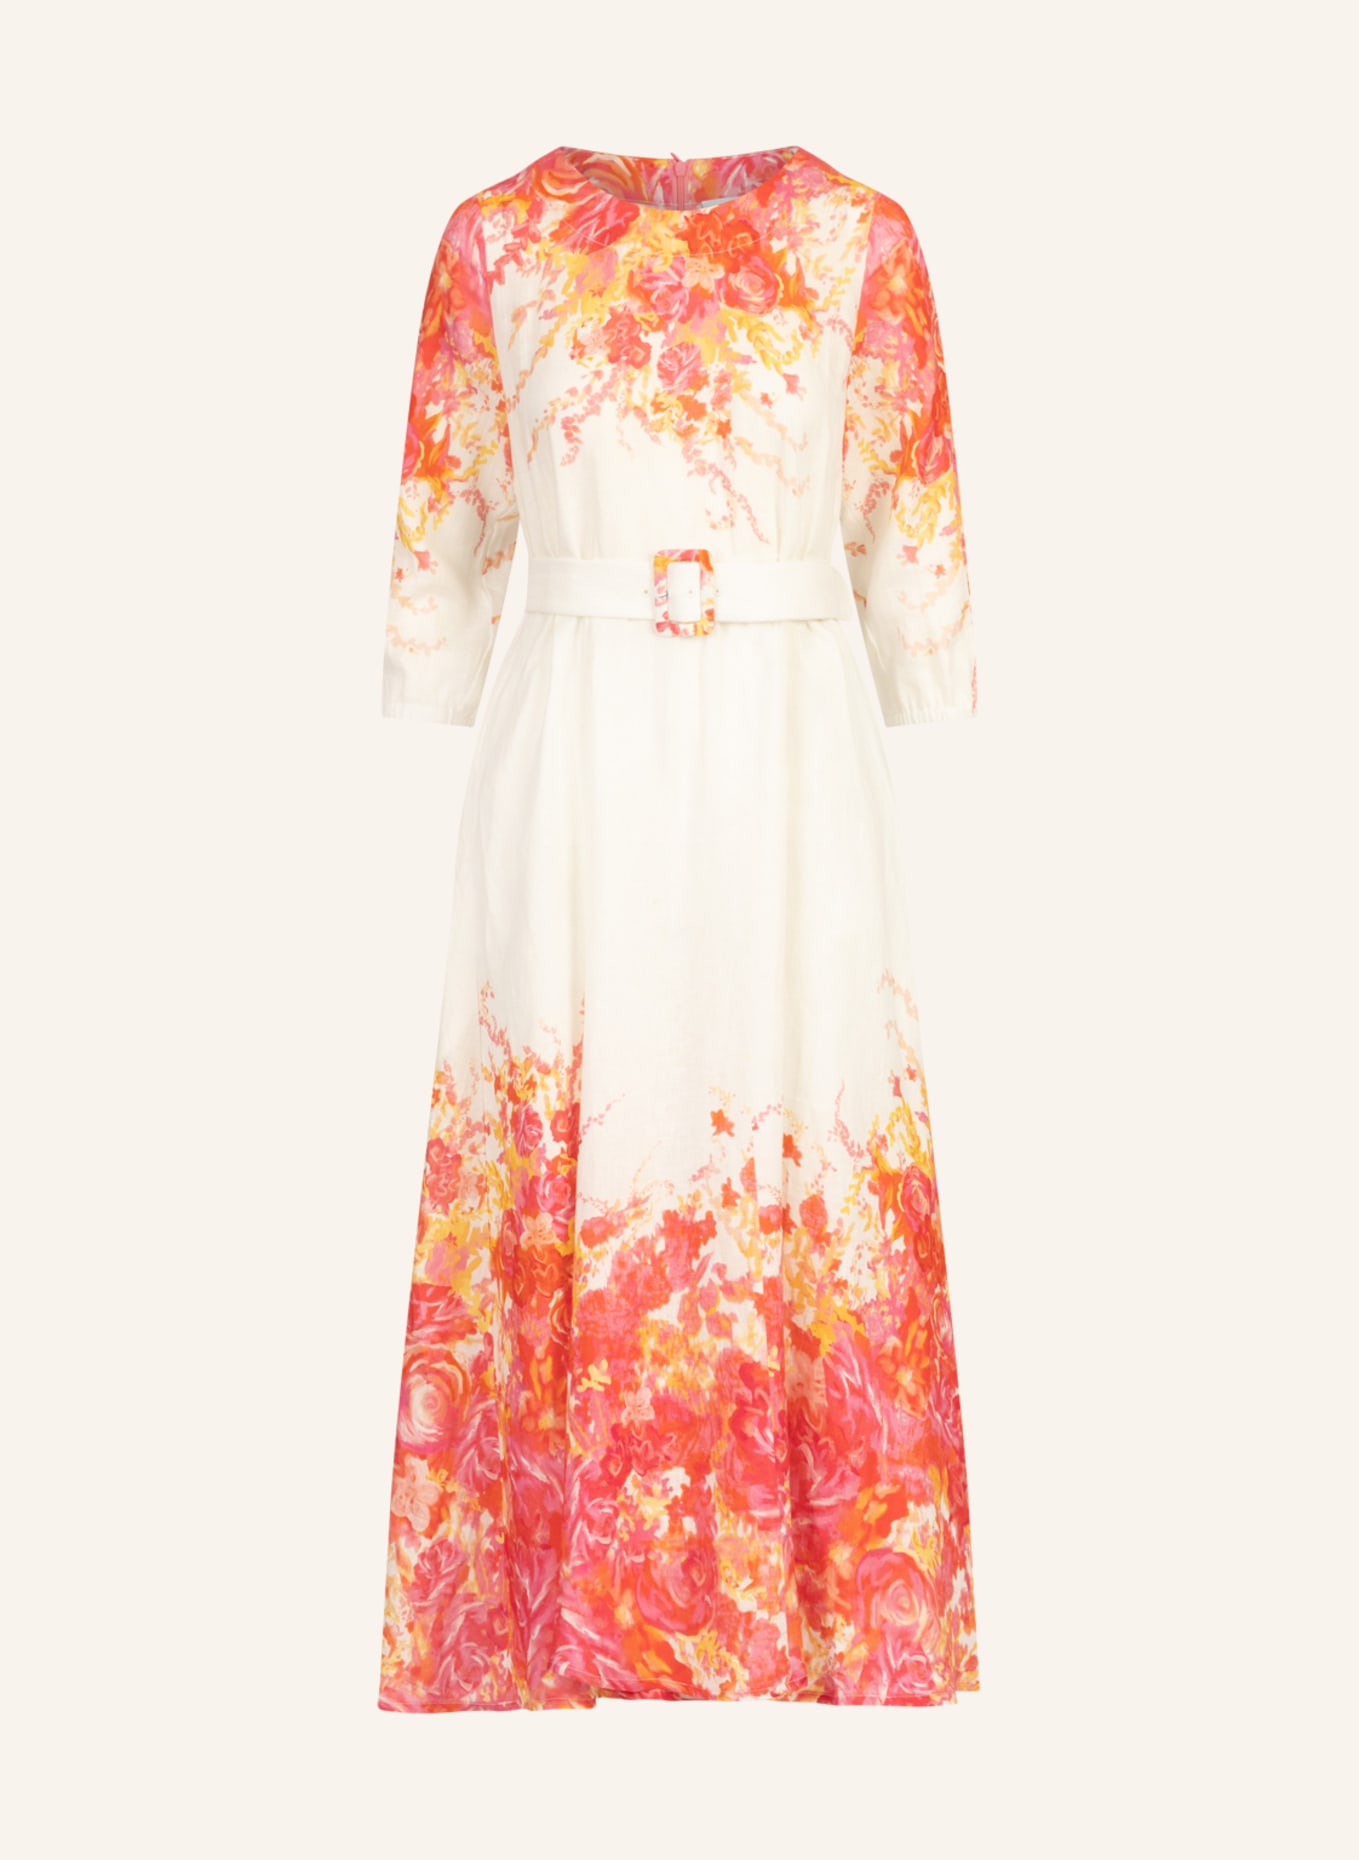 mint & mia Leinen Kleid, Farbe: WEISS (Bild 1)